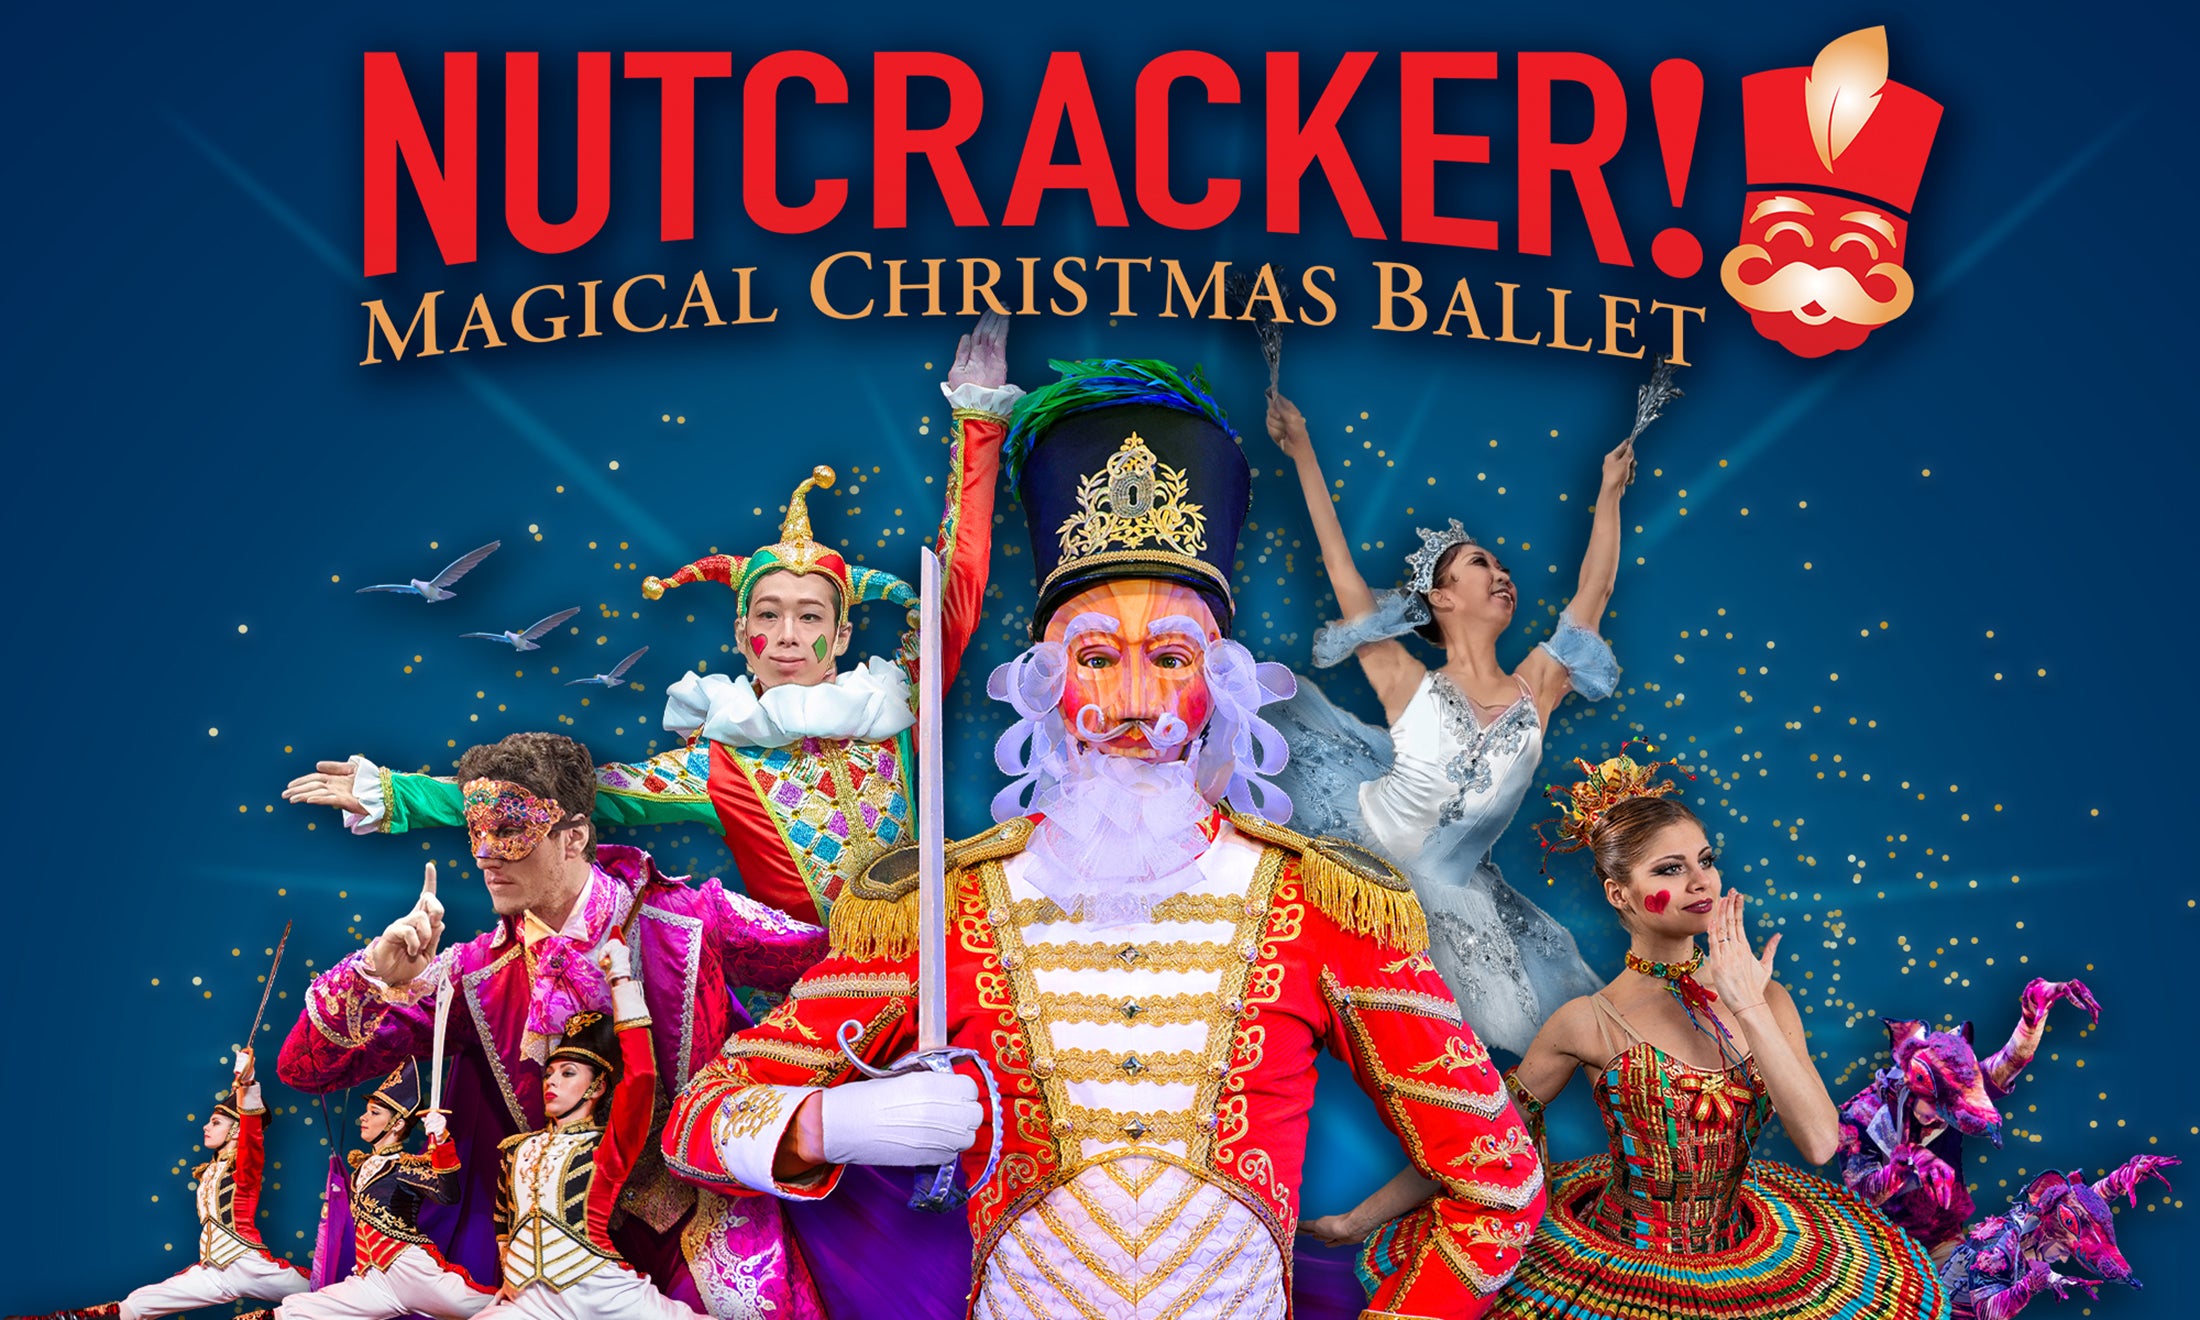 Nutcracker! Magical Christmas Ballet at The Pasadena Civic